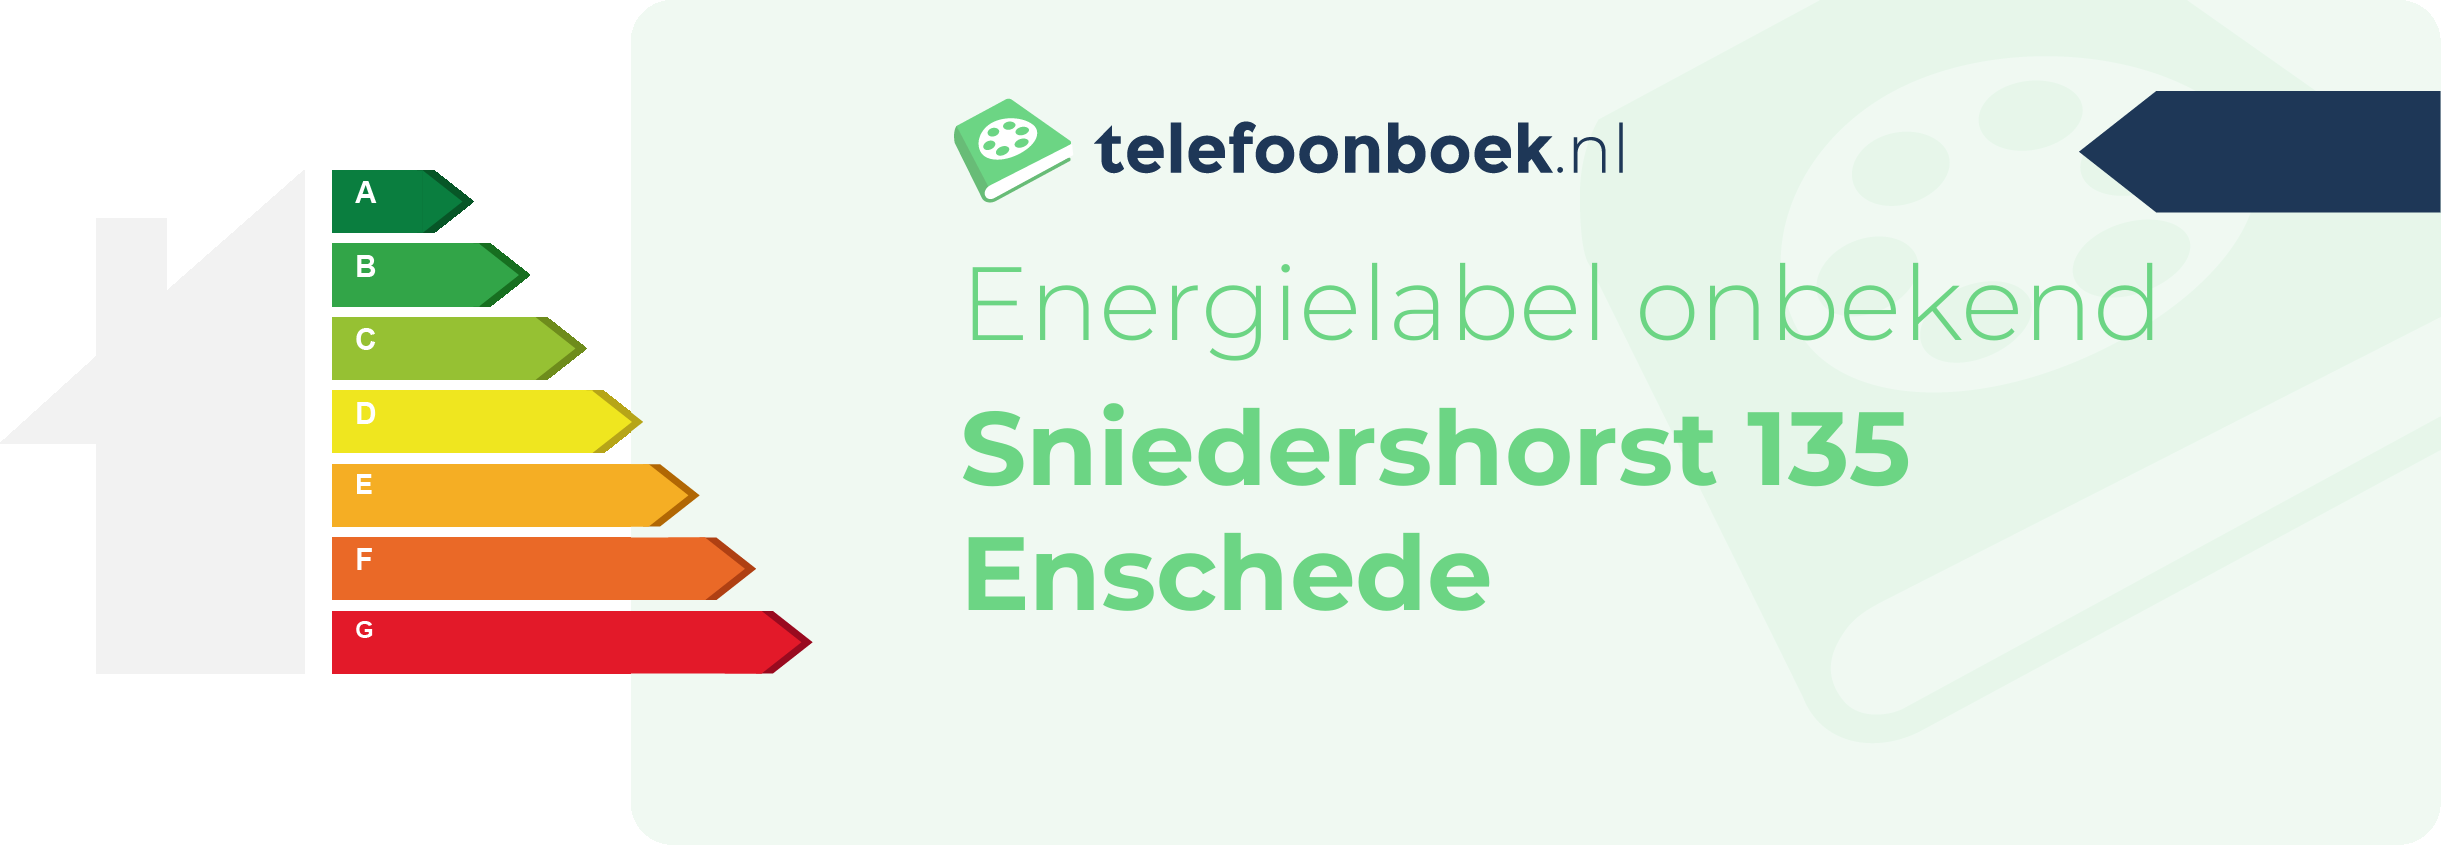 Energielabel Sniedershorst 135 Enschede